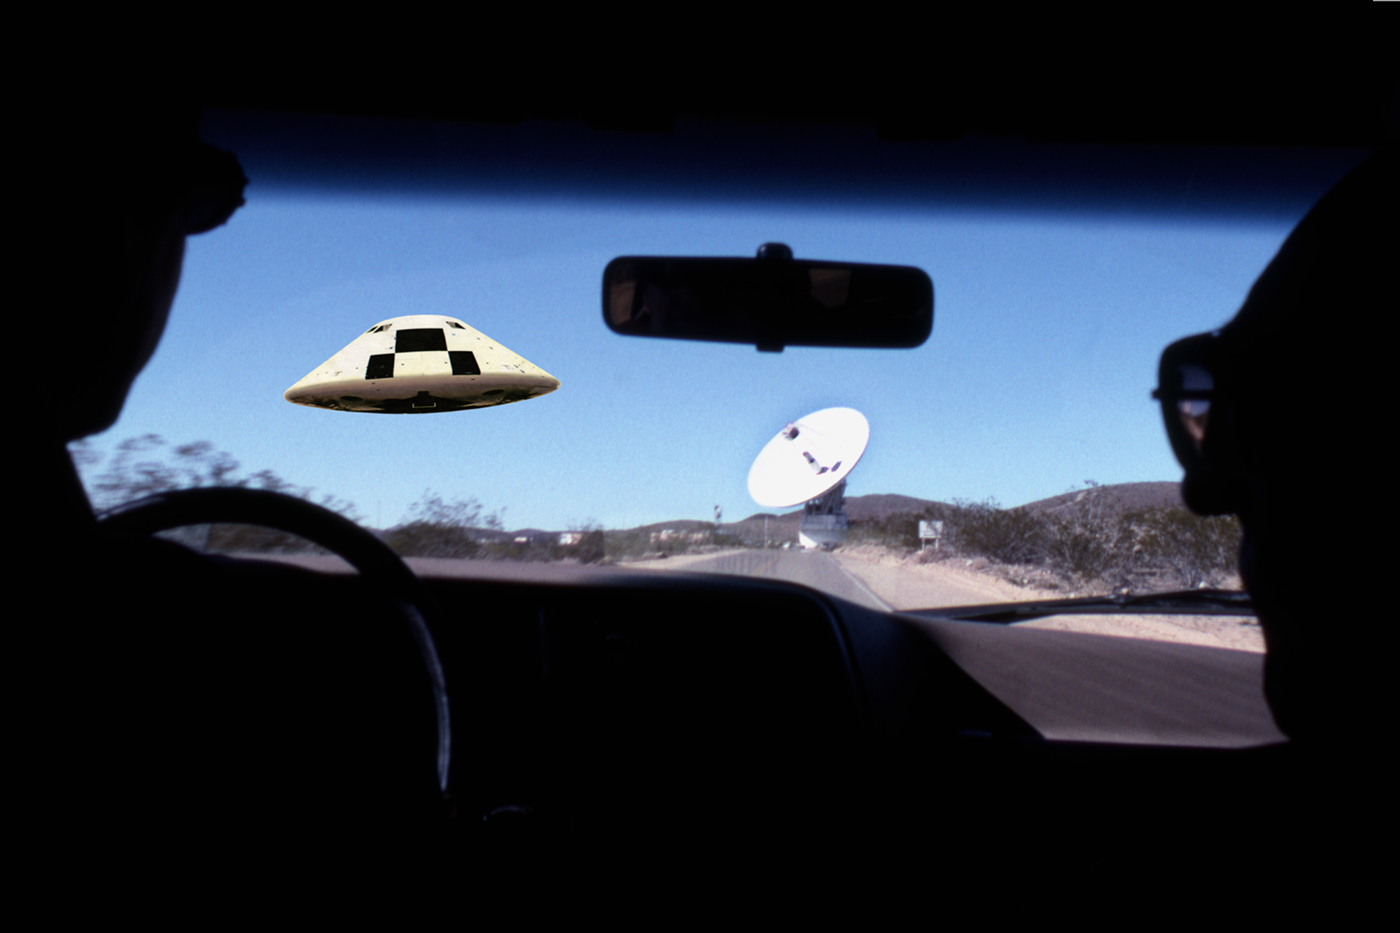 UFO imagination art Retro pop culture series unexplained unexplained phenomena David Jordan Williams Victor Raphael